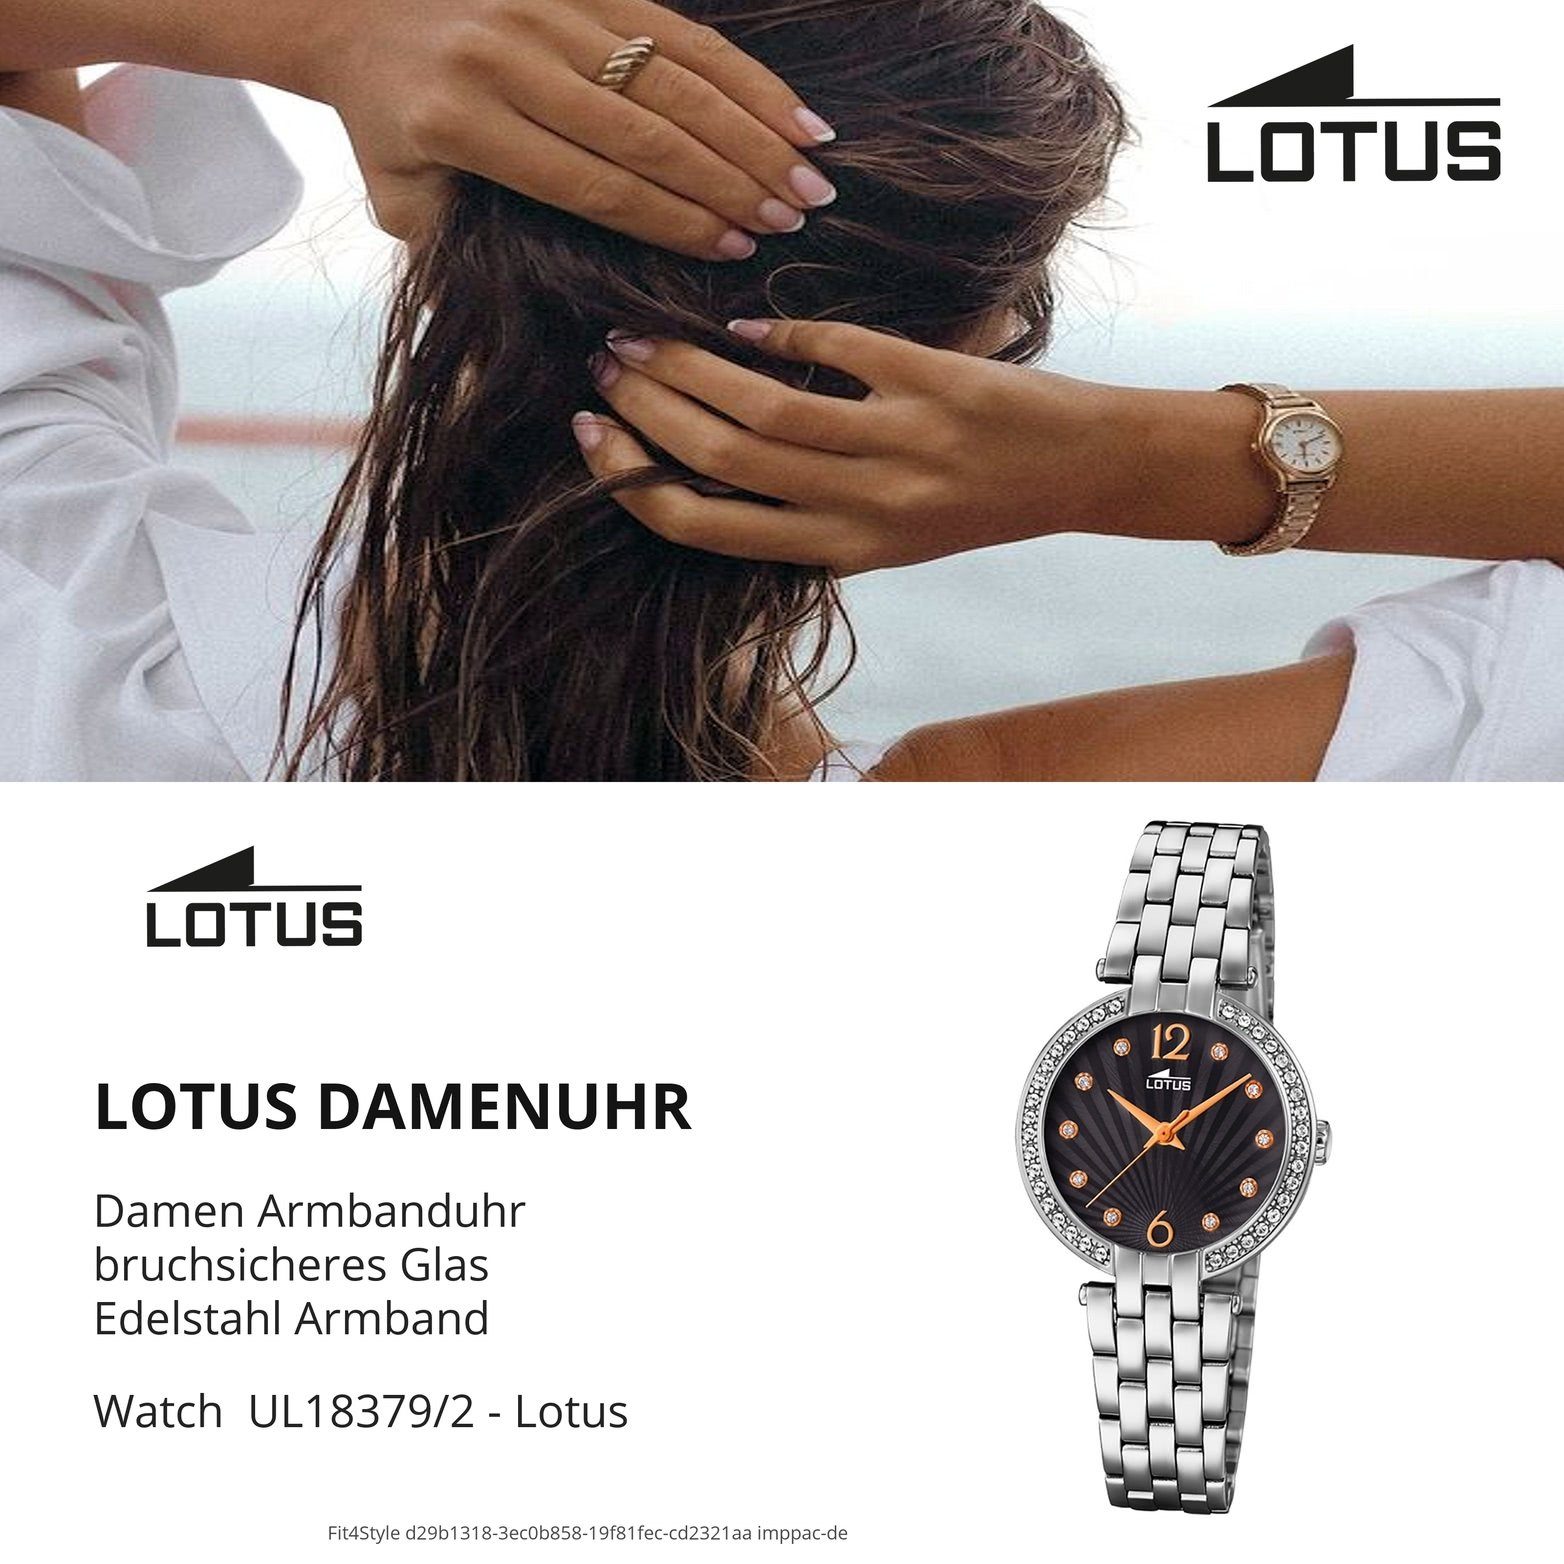 Lotus Quarzuhr Lotus Edelstahl Damen Edelstahlarmband, L18379/2, Damenuhr mit klein 29mm), Uhr rundes Gehäuse, (ca. Fashi